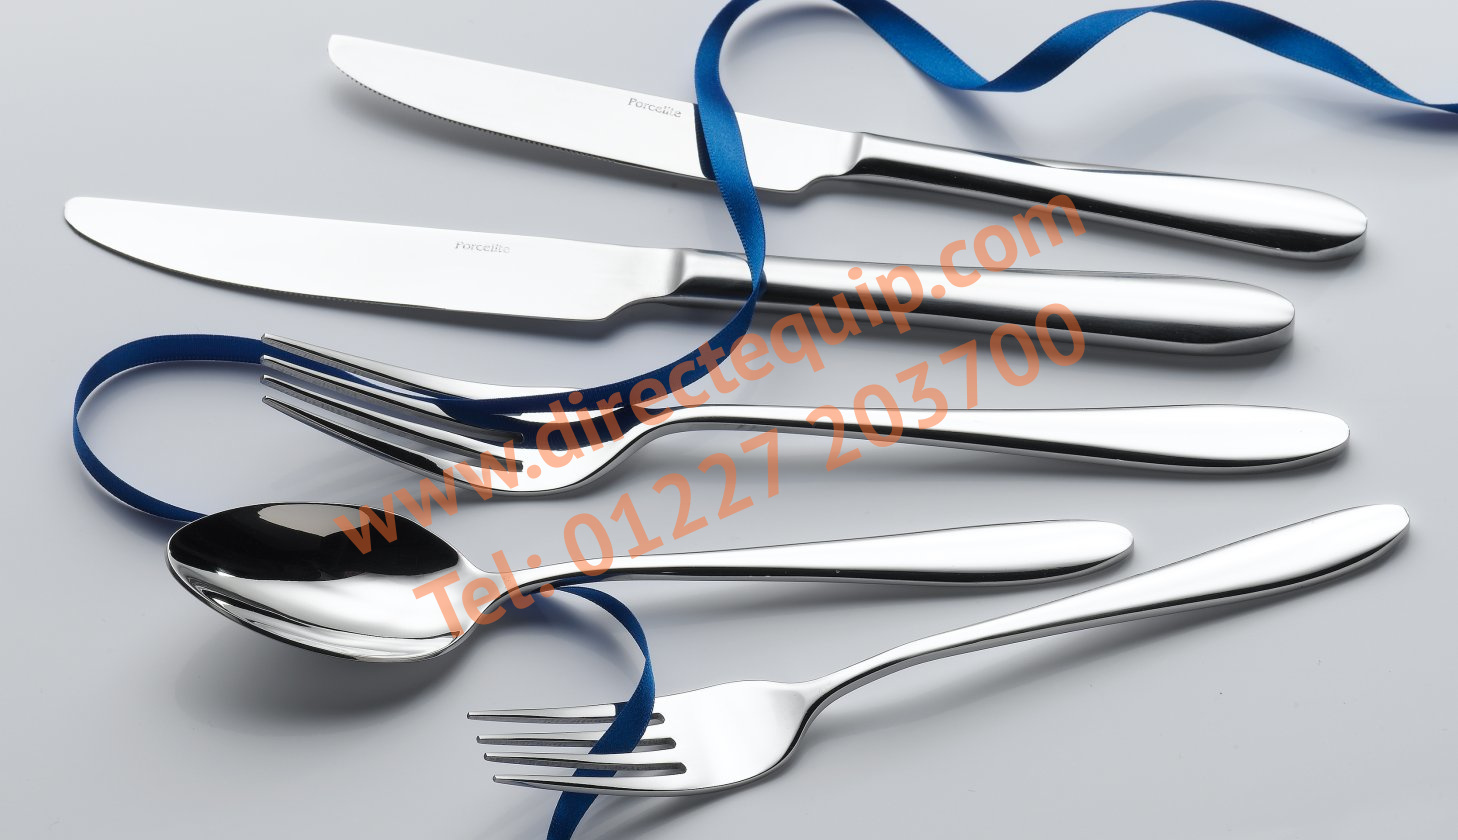 Global Cutlery